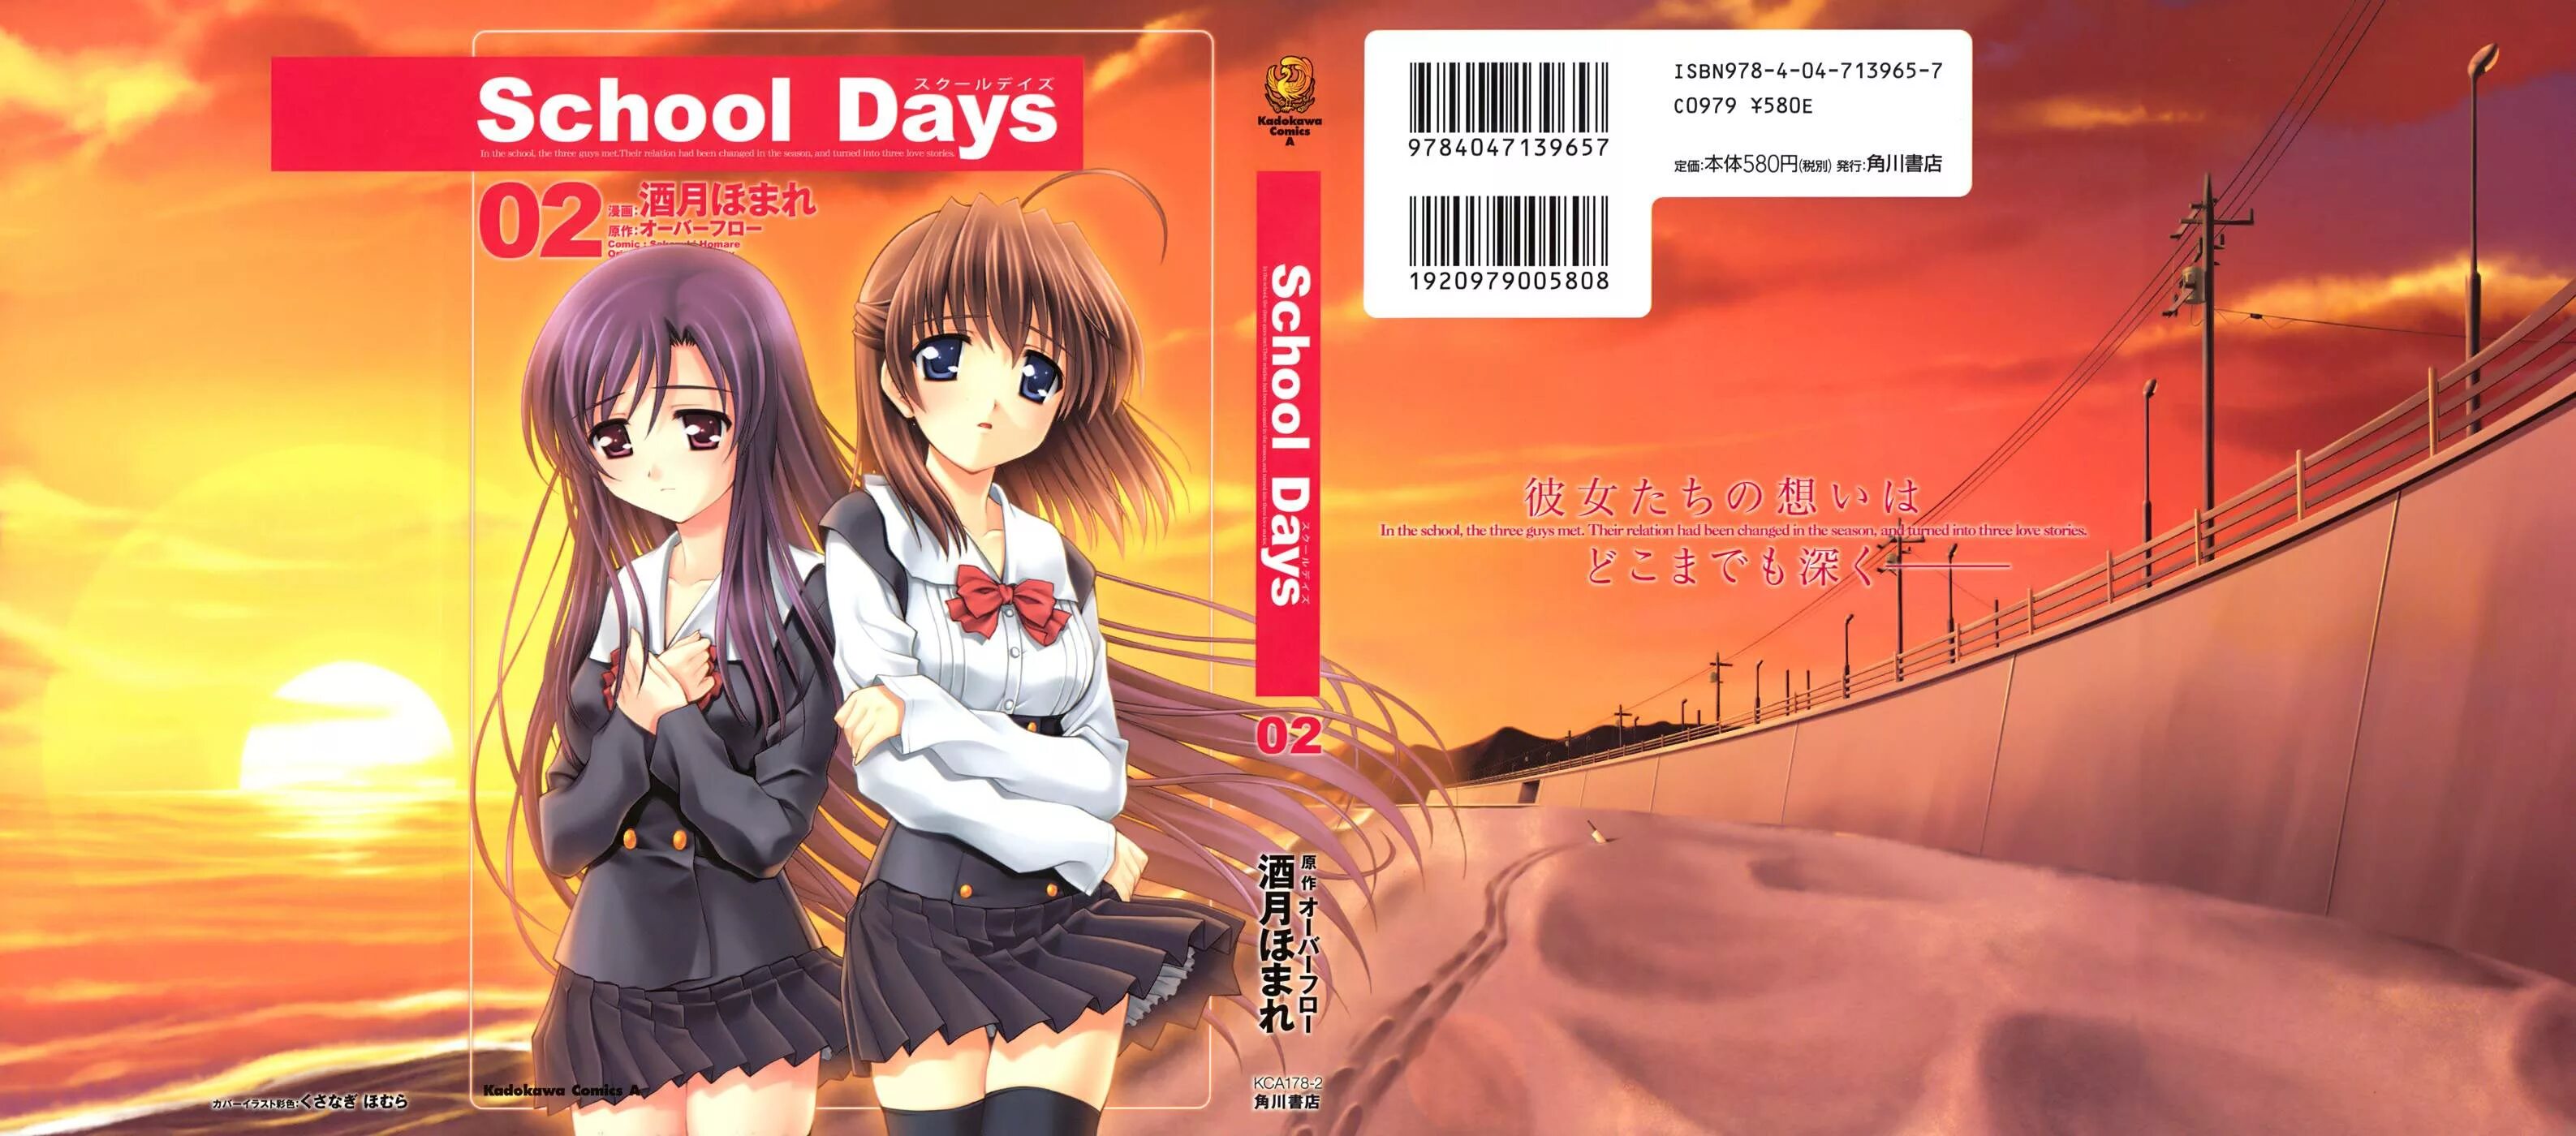 Обложка школьные дни. School Days (игра). Love School Days игра.